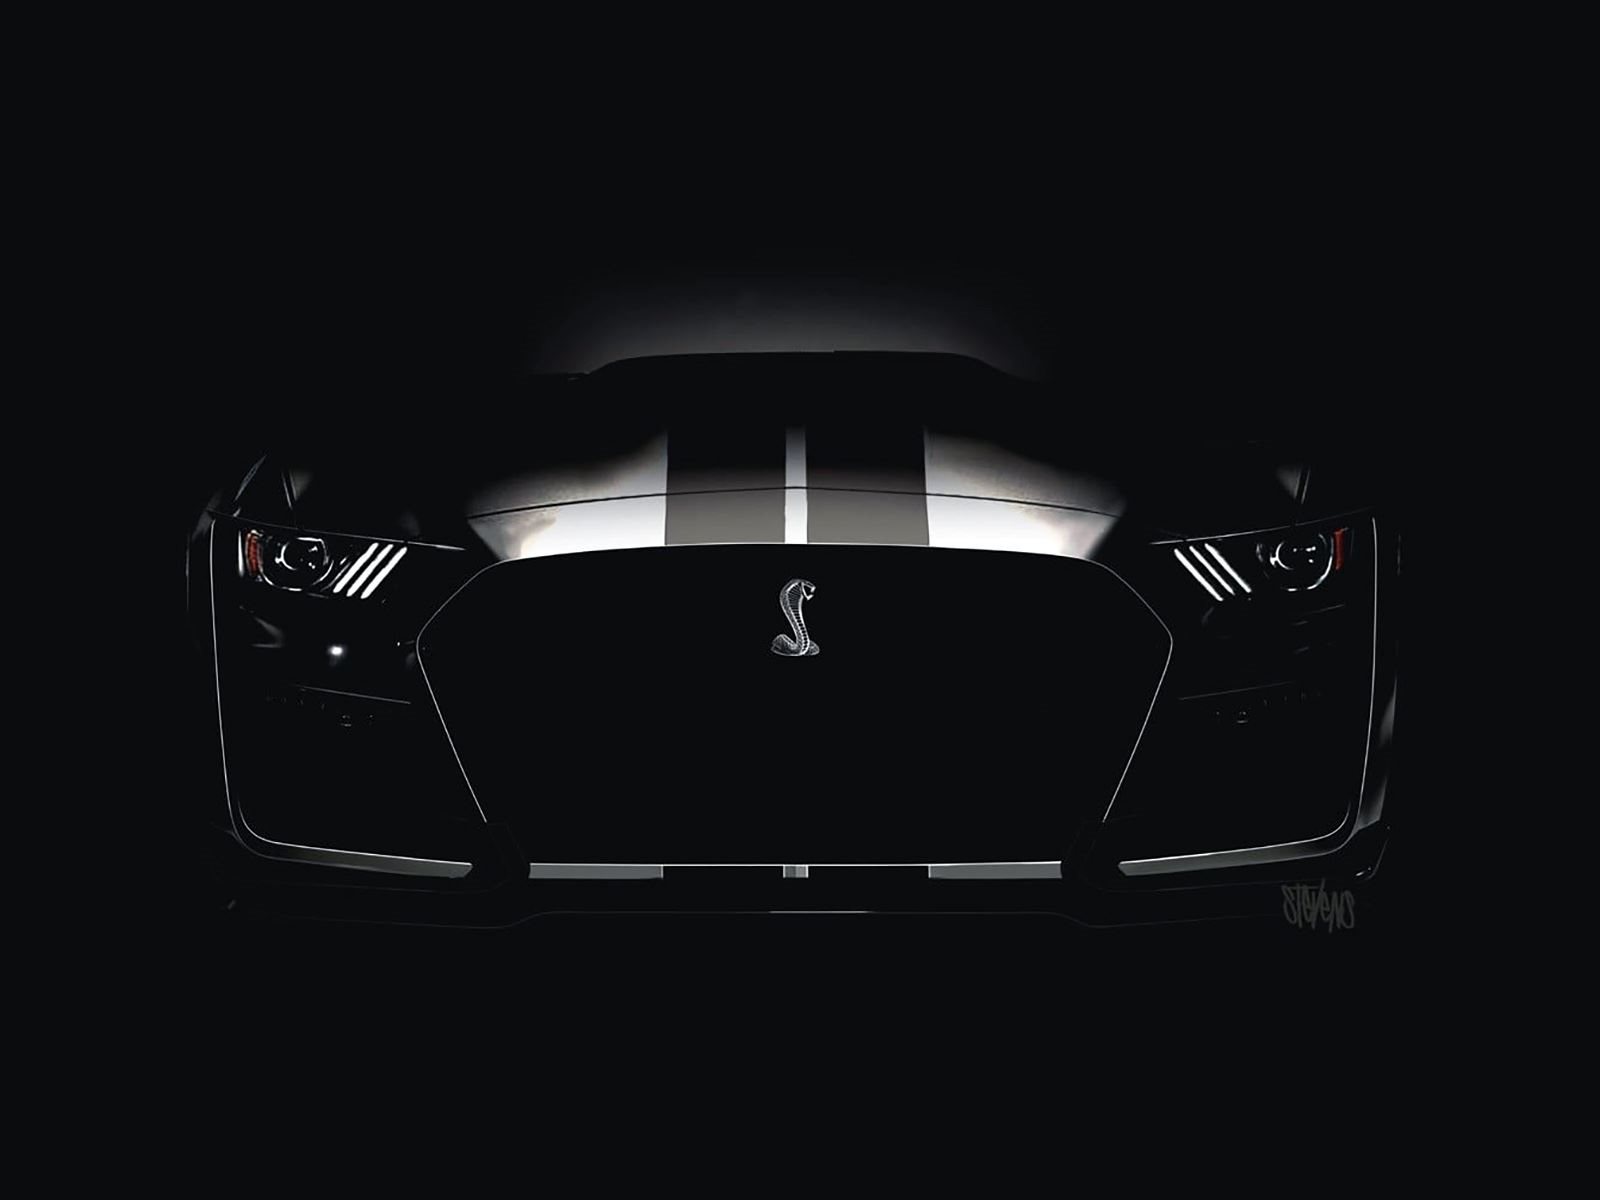 2019 Shelby GT500 обещает стать самым мощным легальным на дорогах Mustang, из когда-либо сделанных, и завершающим изданием шестого поколения масо-кара.